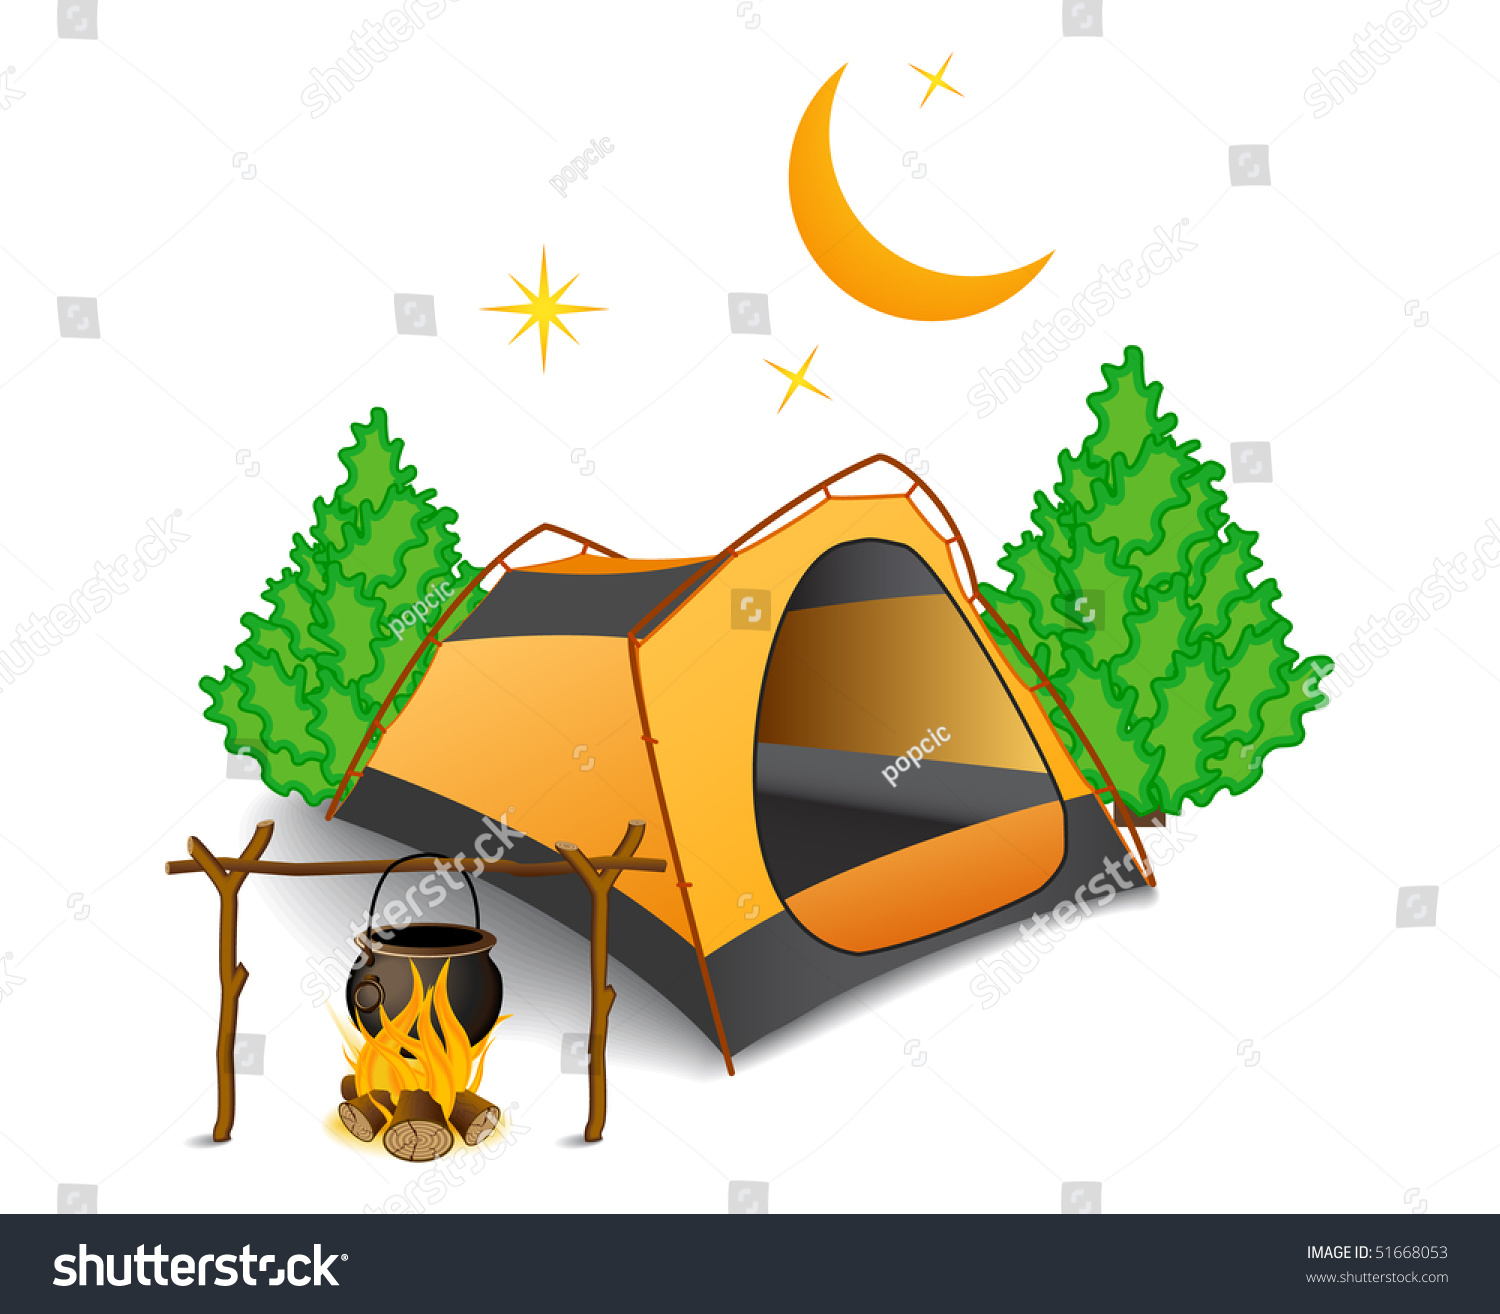 Camping Stock Vector Illustration 51668053 : Shutterstock